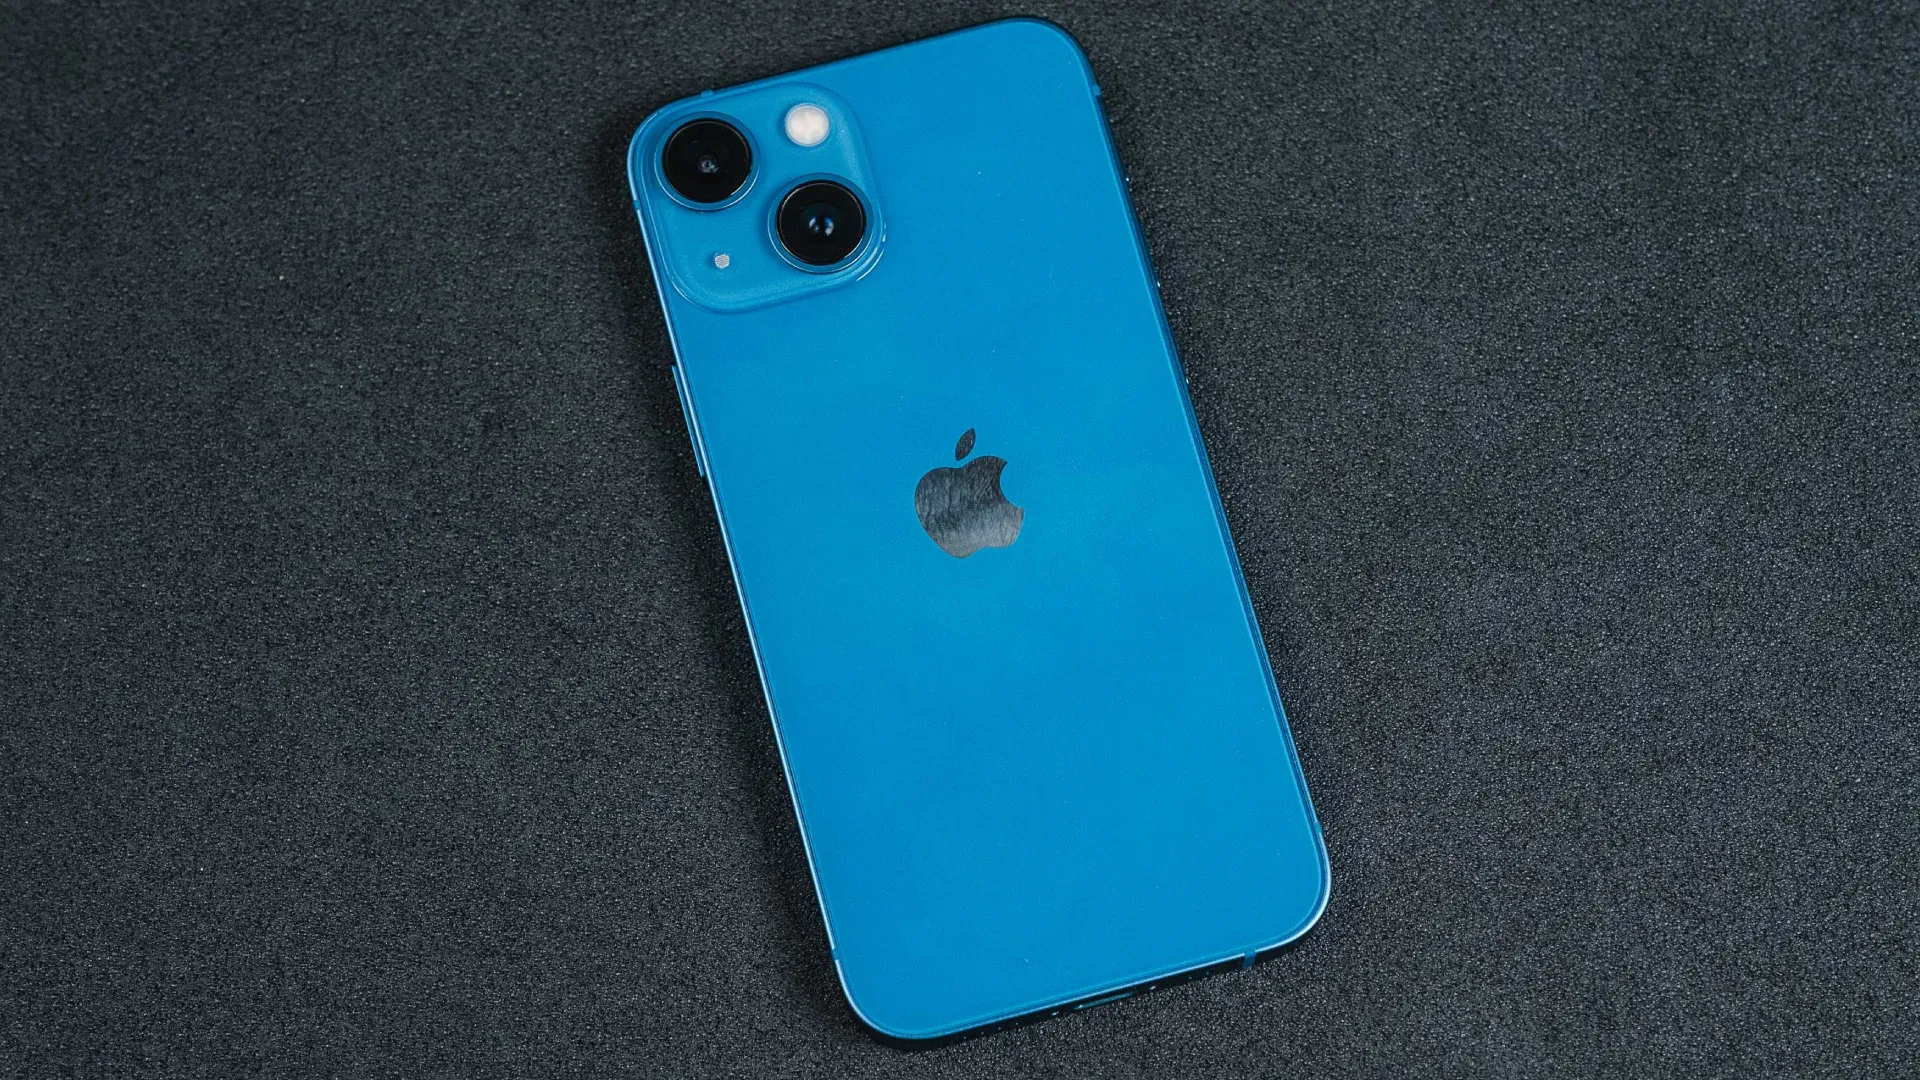 Conheça a capa que transforma a traseira do iPhone em um Mini Game